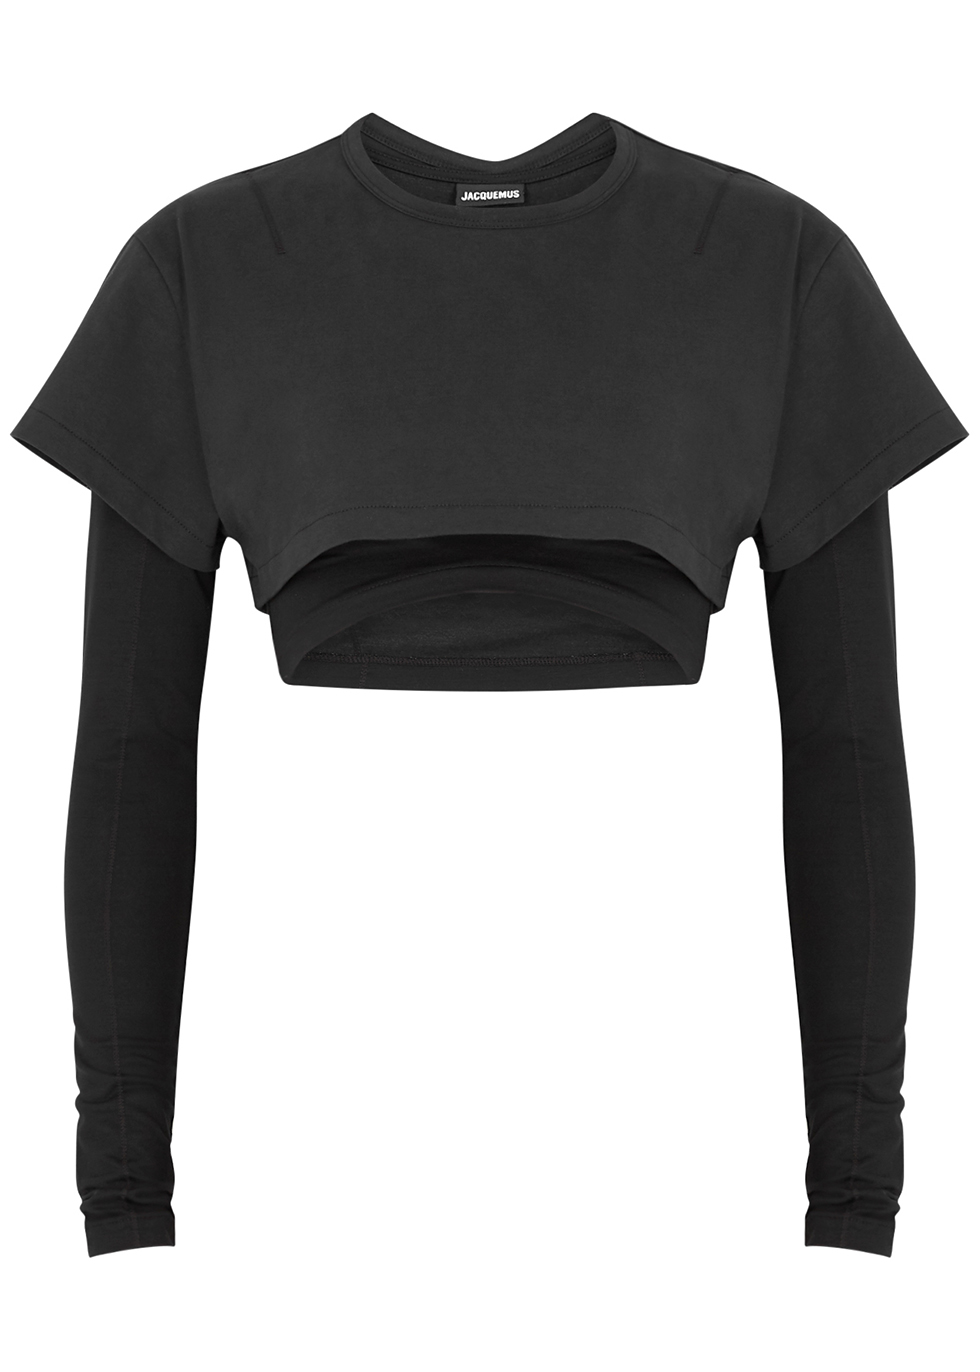 Jacquemus Le Double T-shirt black layered cotton top